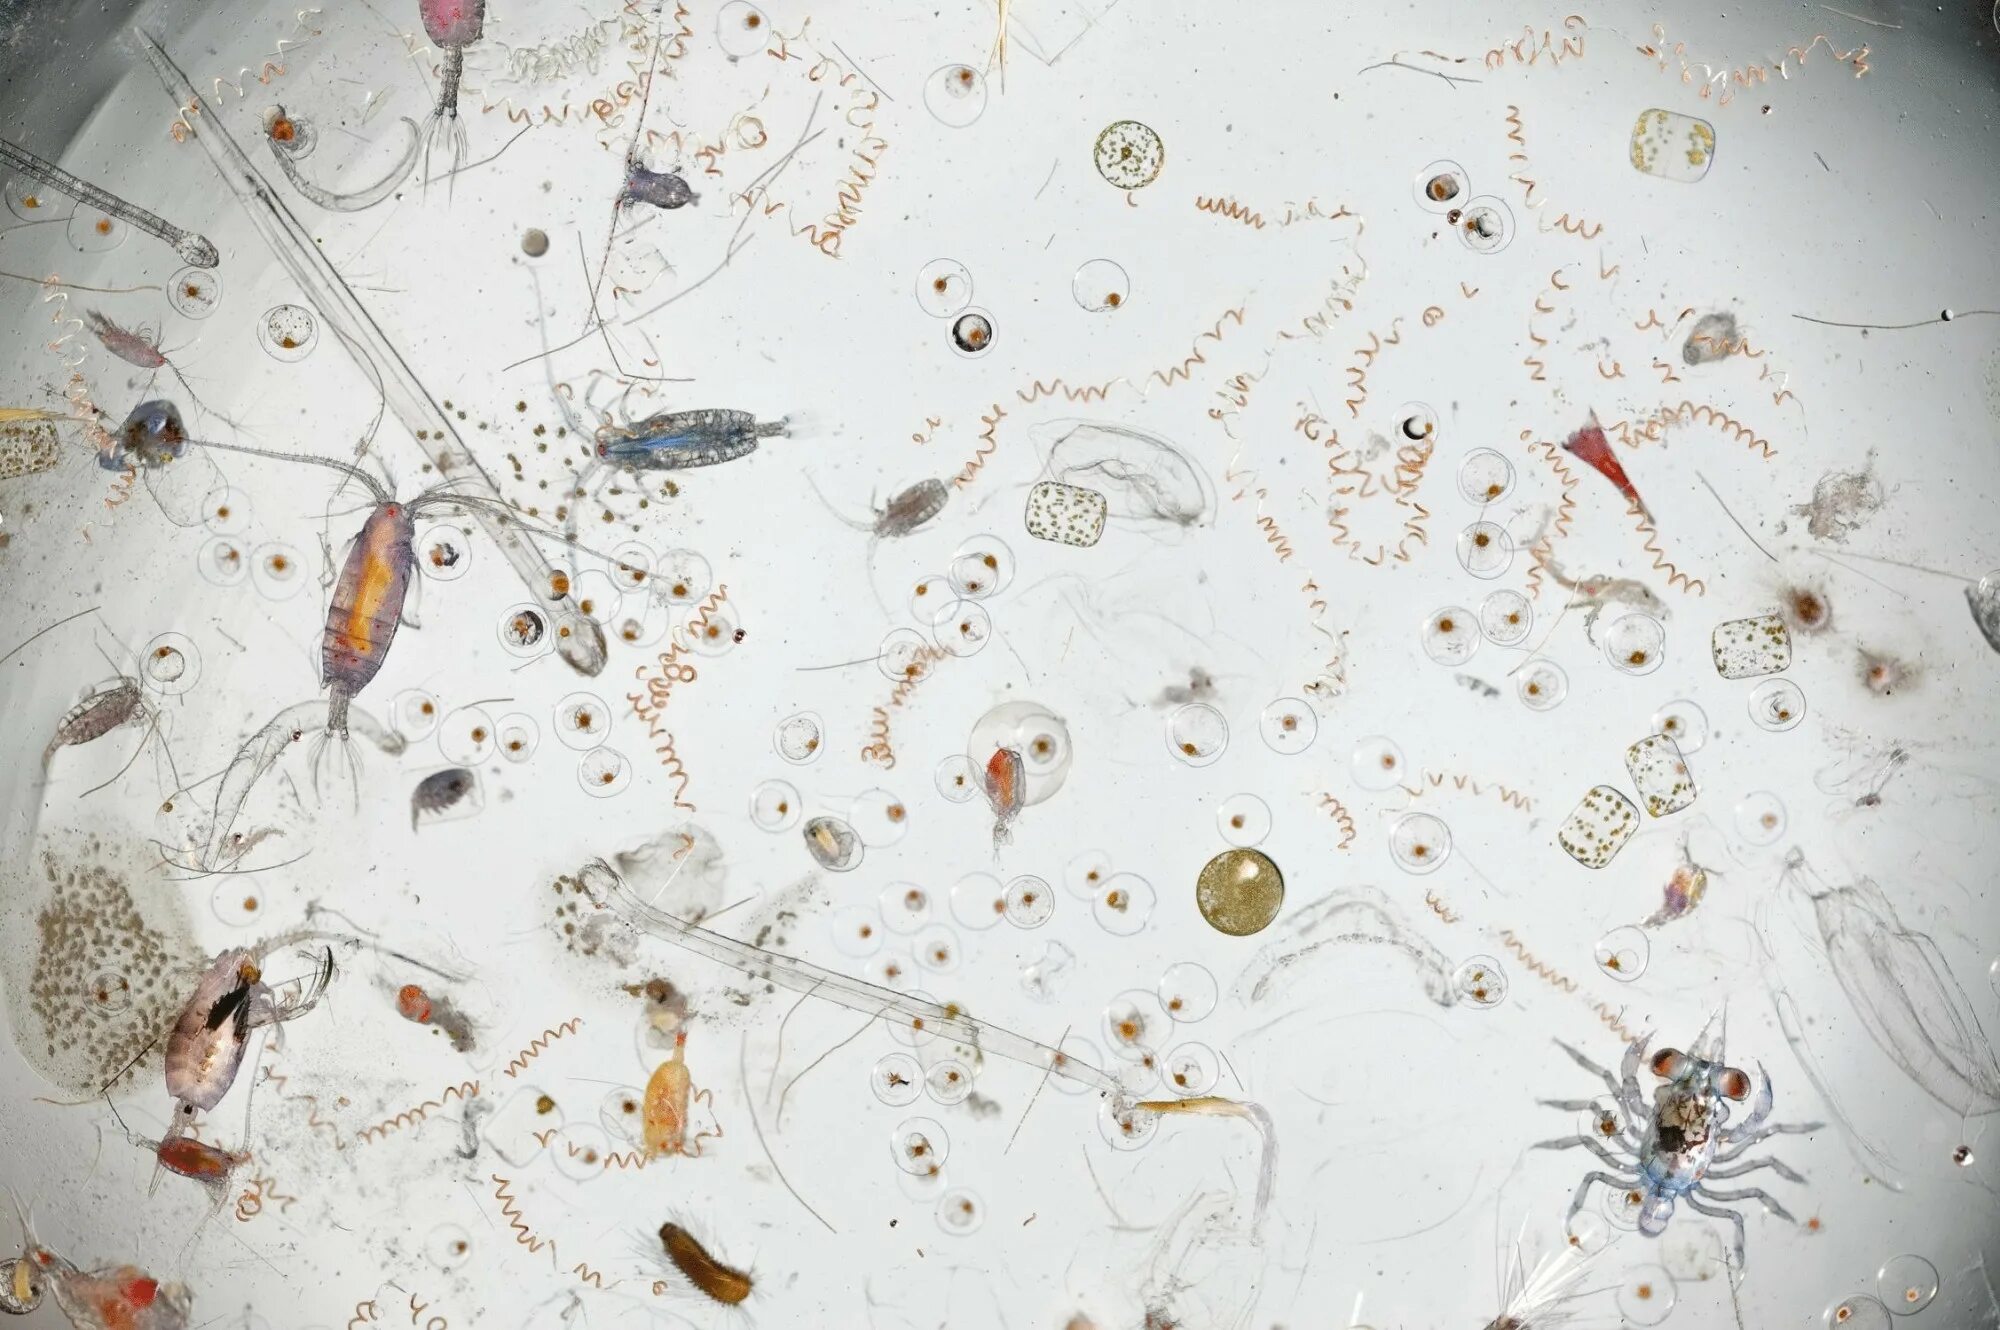 Бактерии в питьевой воде. Морская вода под микроскопом. Морская капля под микроскопом. Как выглядит морская вода под микроскопом. Капля морской воды под микроскопом.